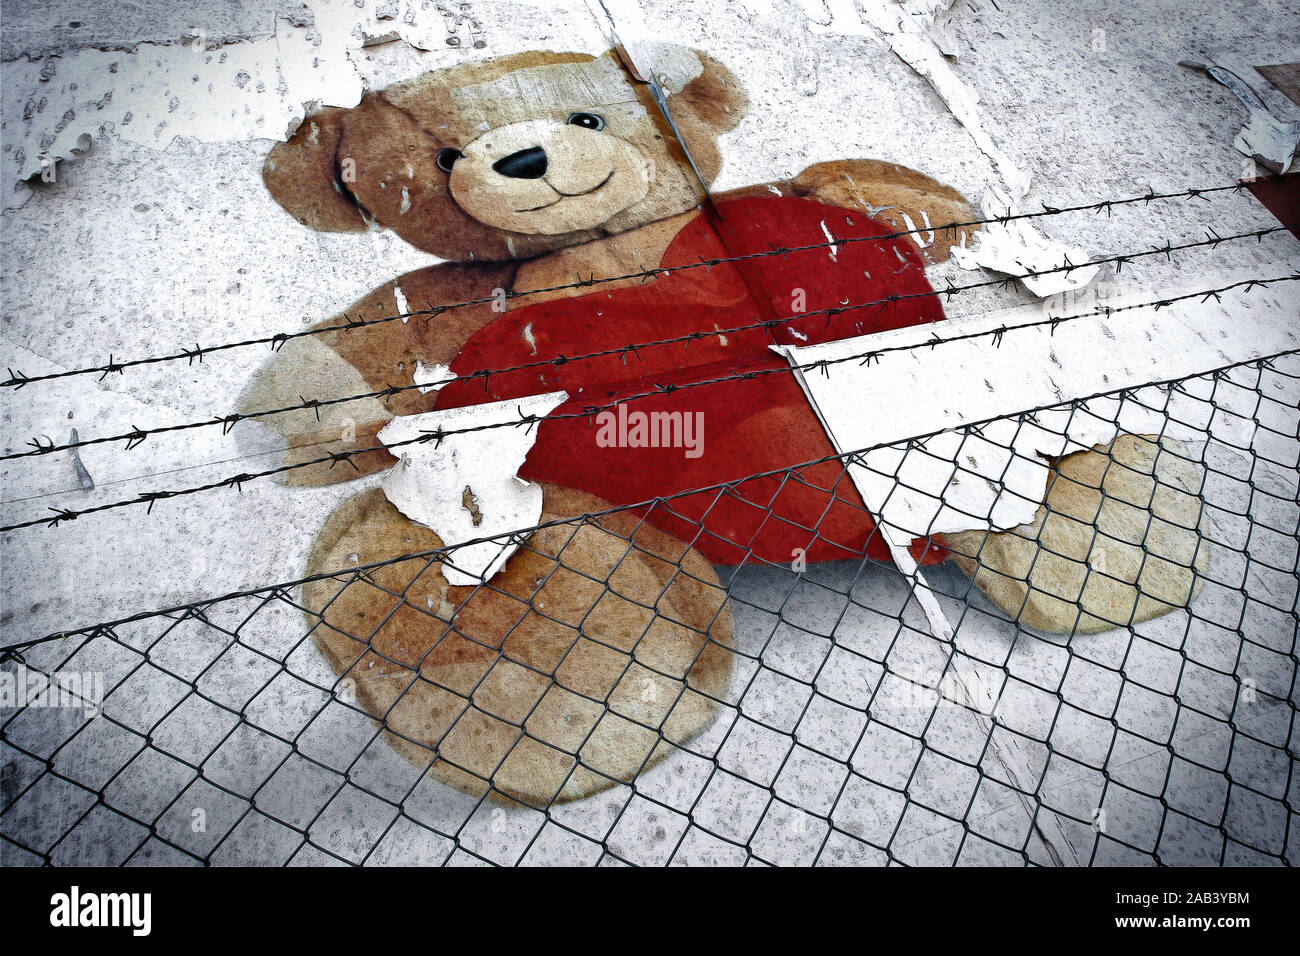 Teddy mit Herz hinter einem Zaun |Teddy with heart behind a fence| Stock Photo